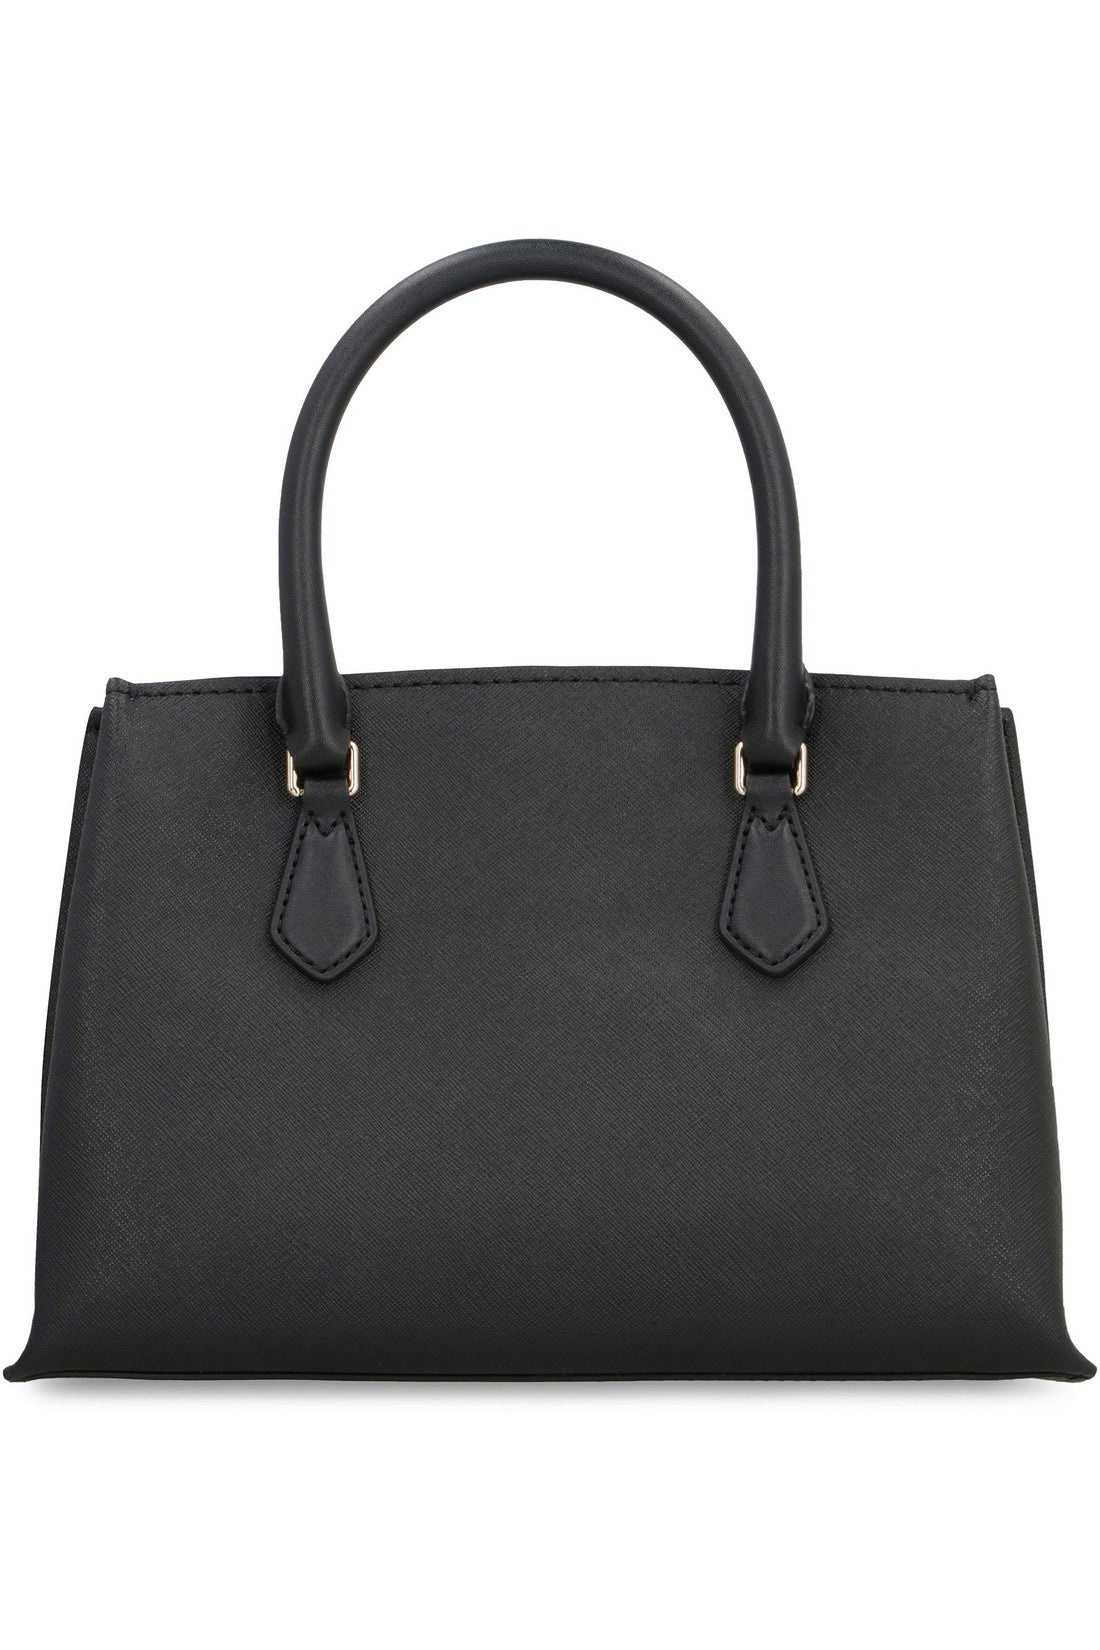 MICHAEL MICHAEL KORS-OUTLET-SALE-Ruby leather handbag-ARCHIVIST